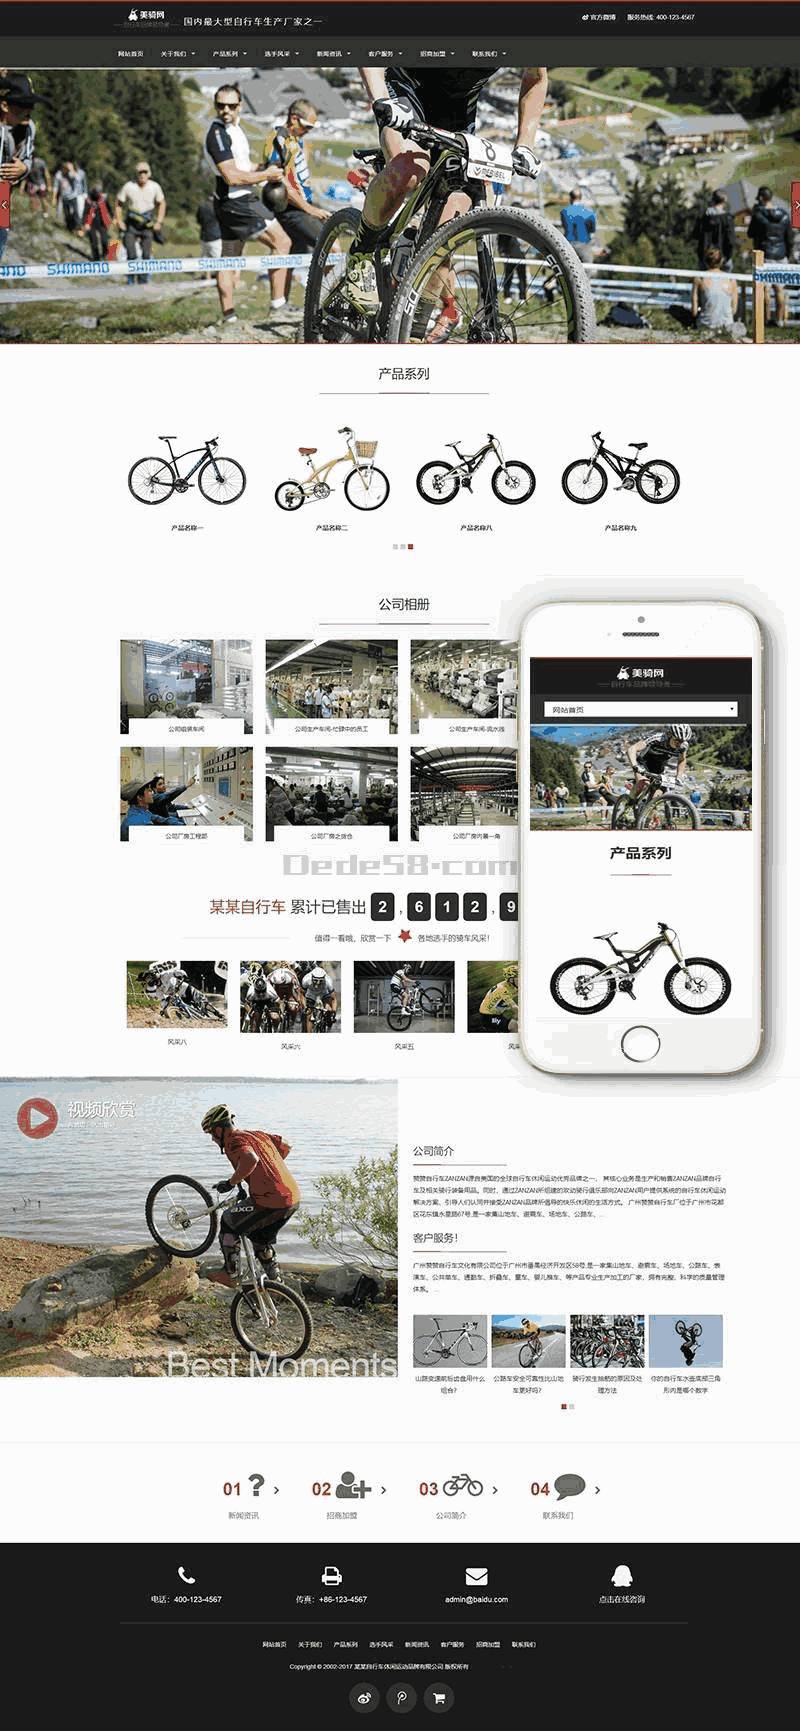 休闲运动品牌自行车响应式网站WordPress模板演示图